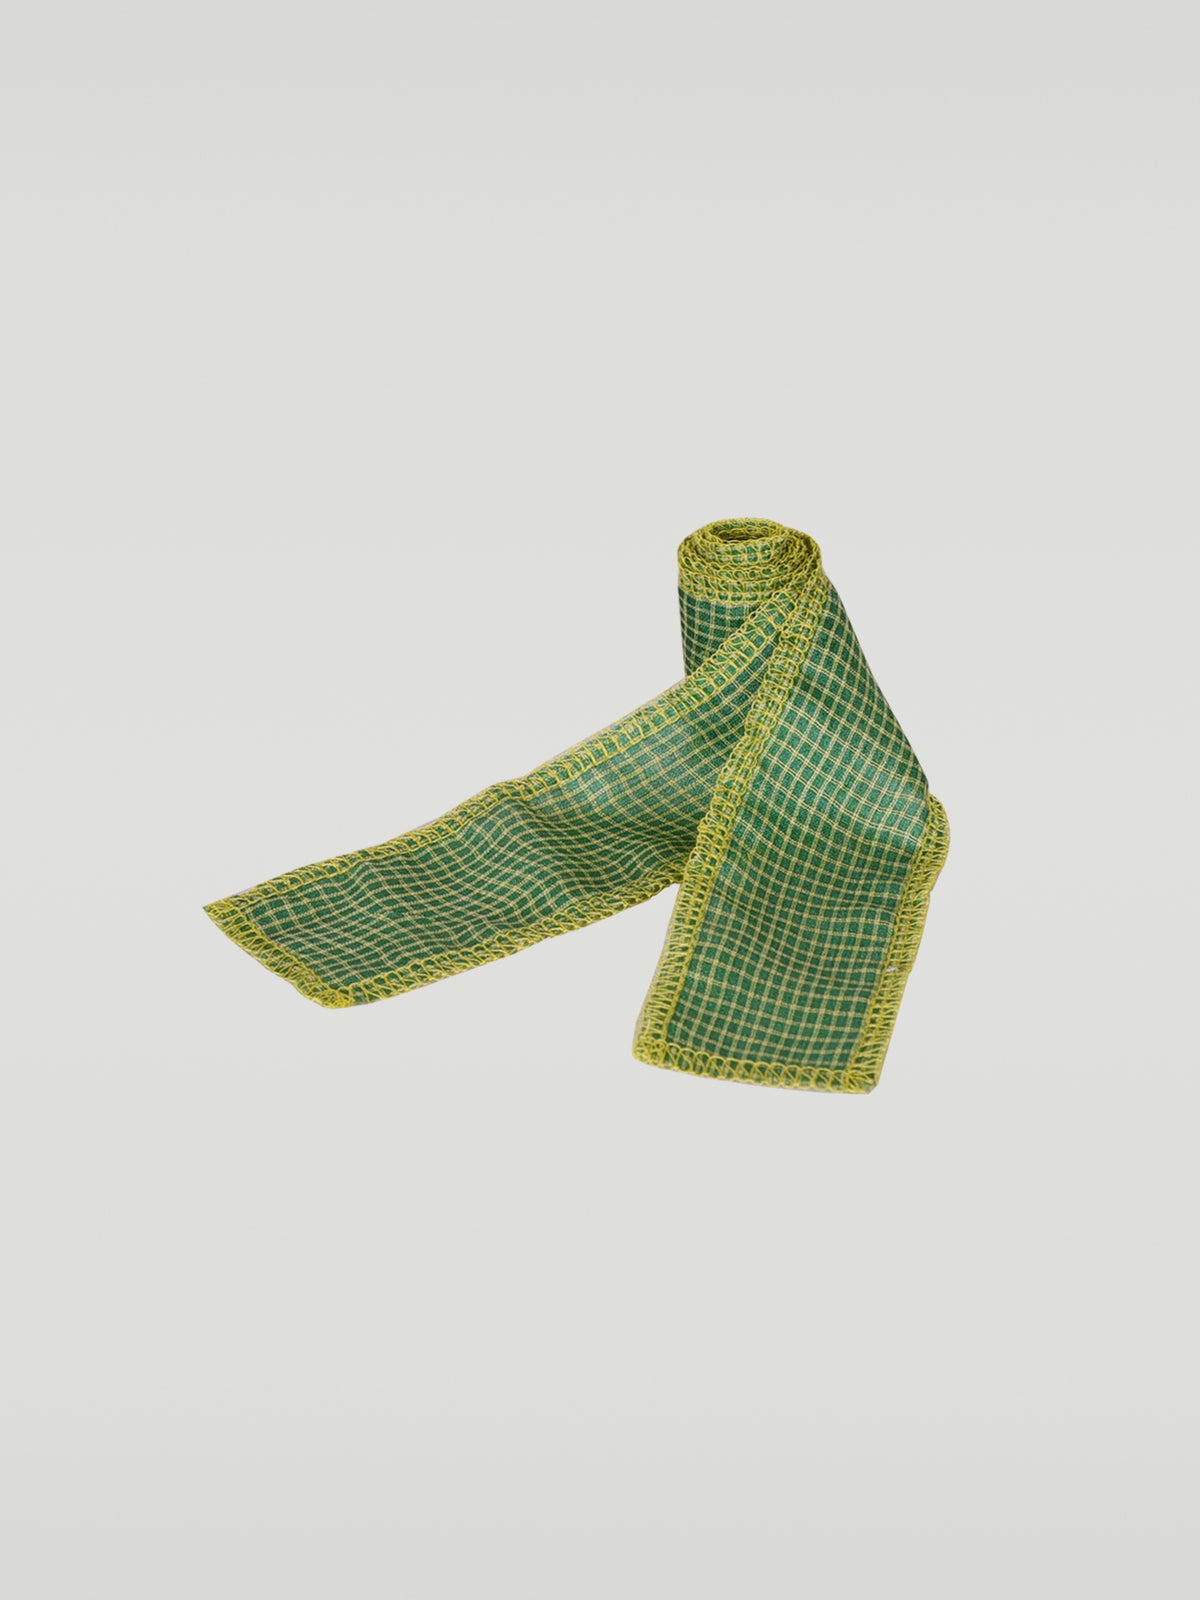 Serged Ribbon Lace - Green Plaid